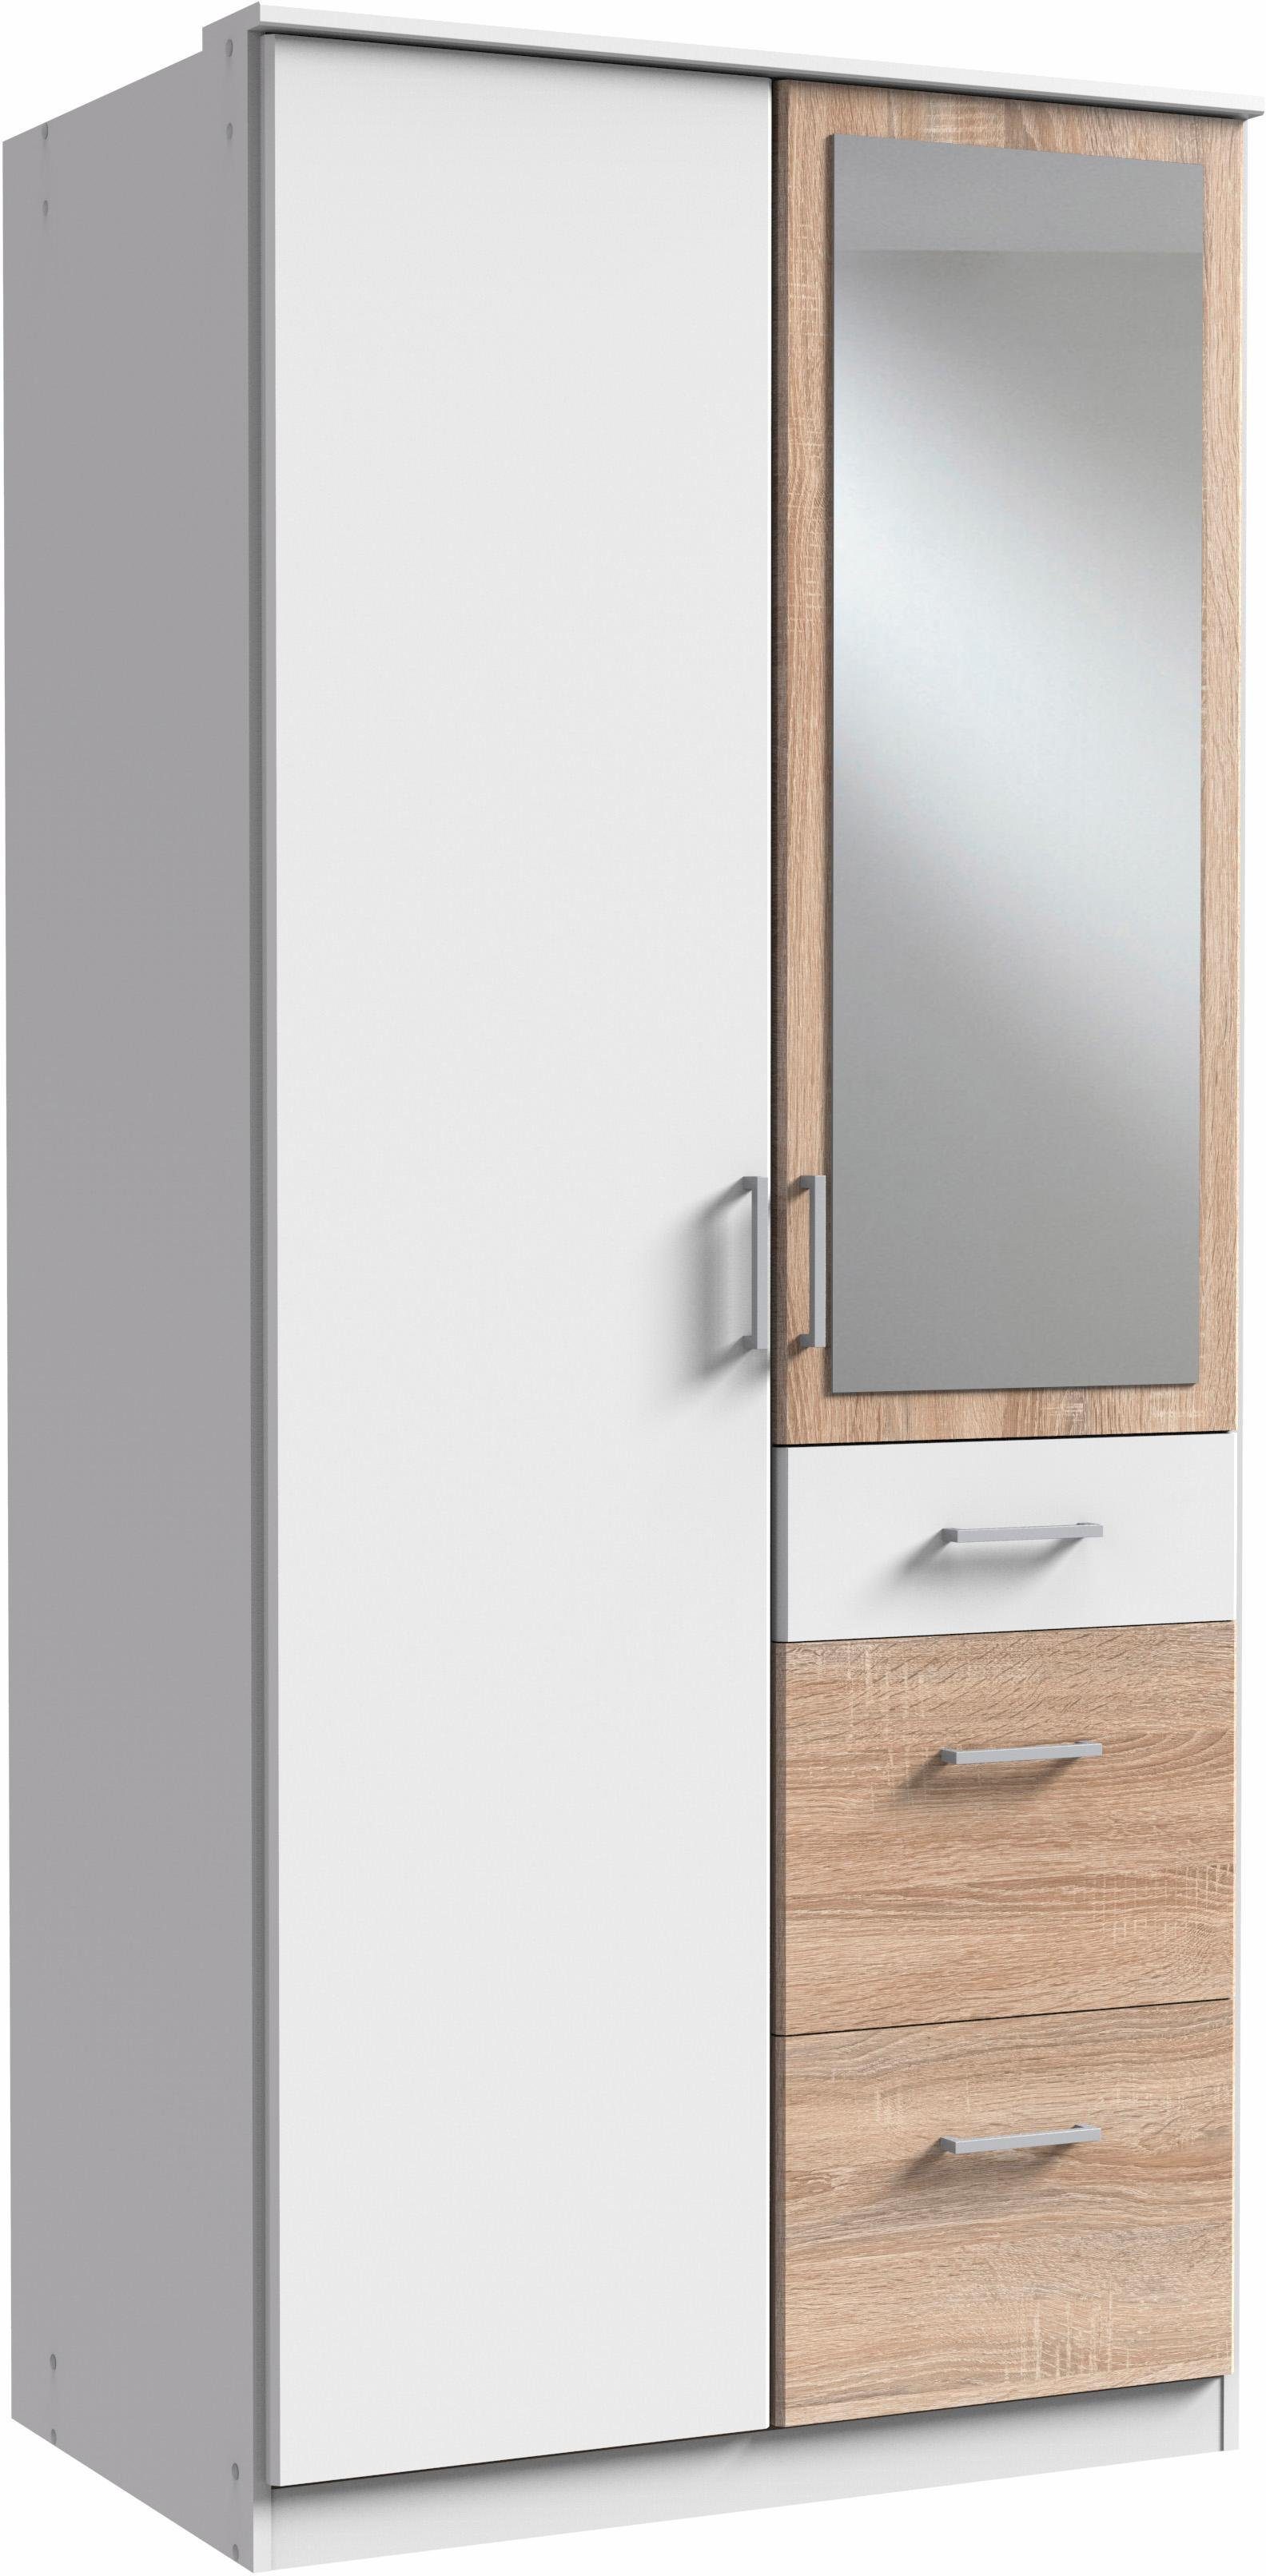 Wimex Kleiderschrank Click mit Spiegel weiß/struktureichefarben hell